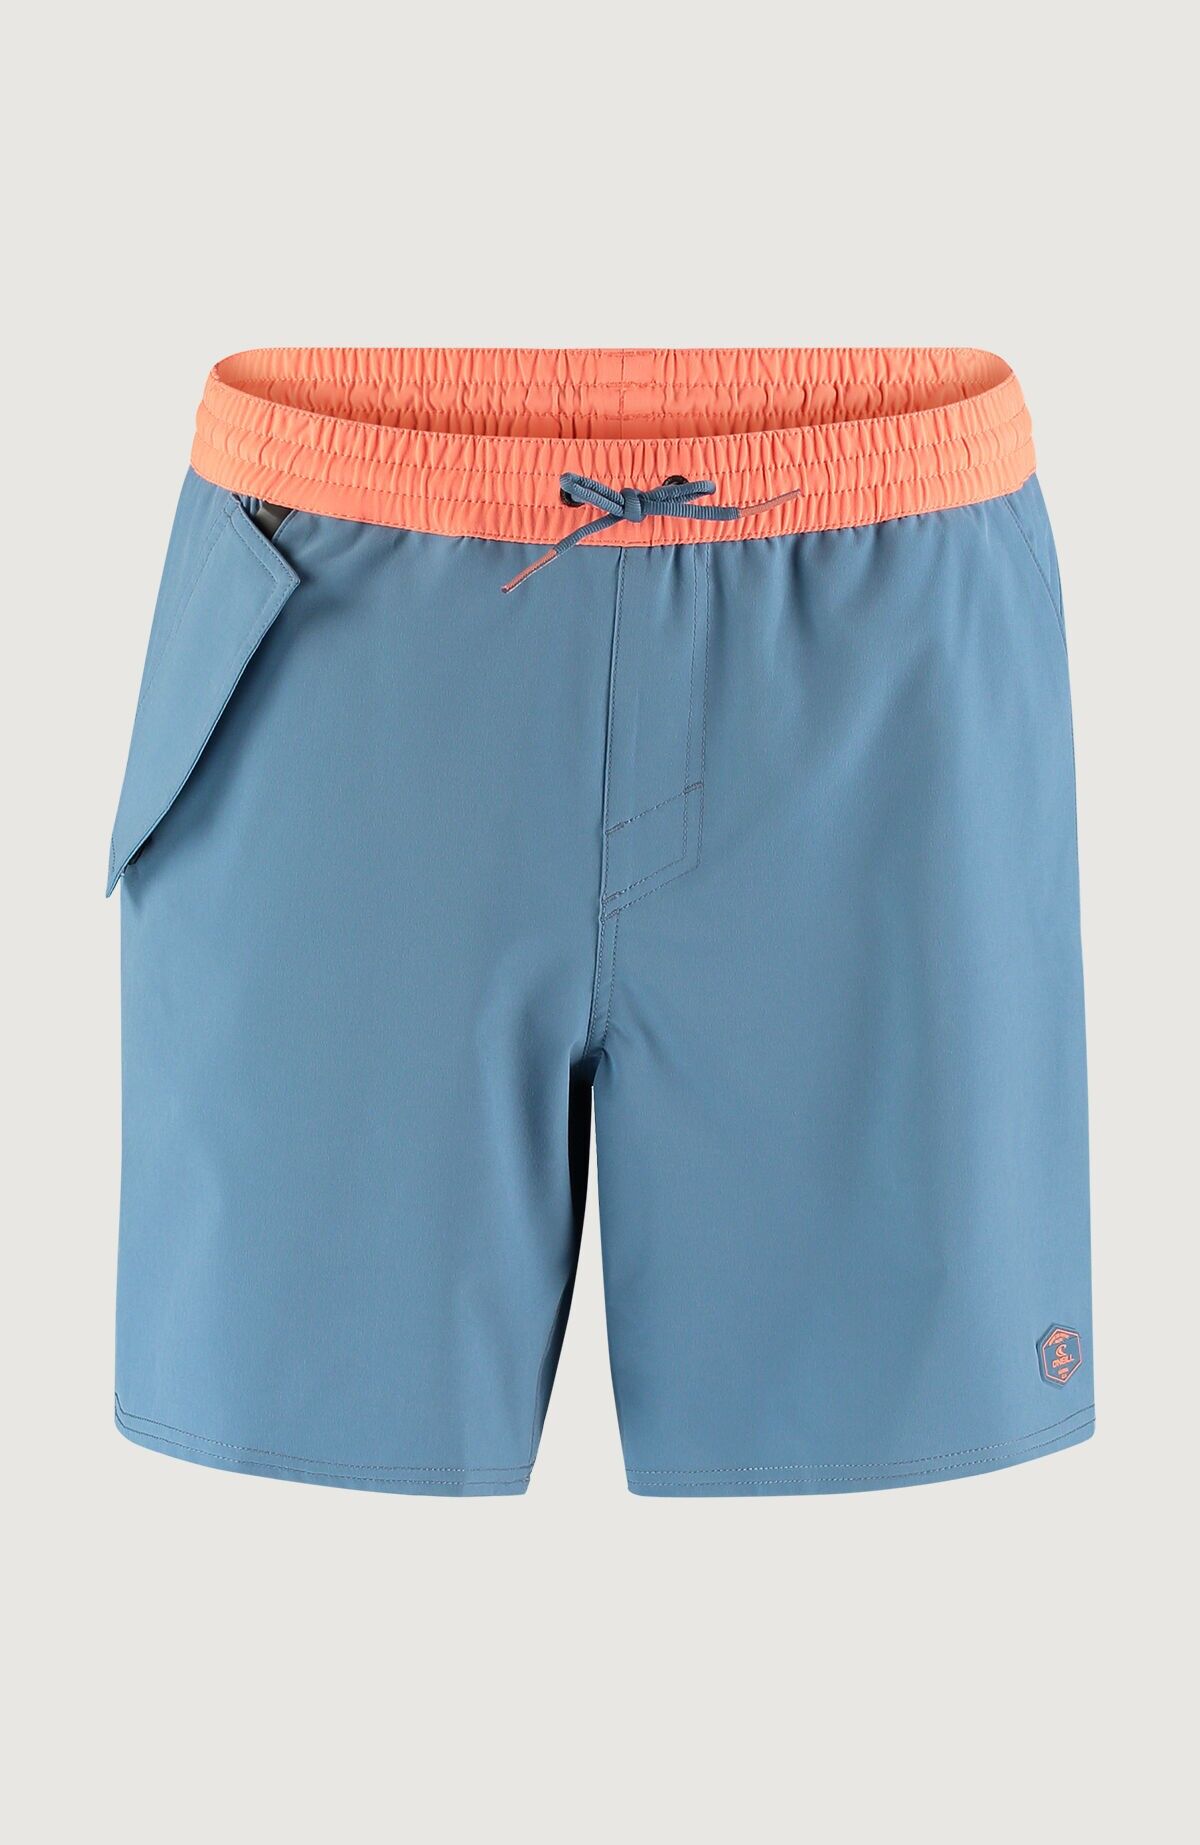 O'Neill Wp-Pocket Shorts - Pantalón de baño - Hombre